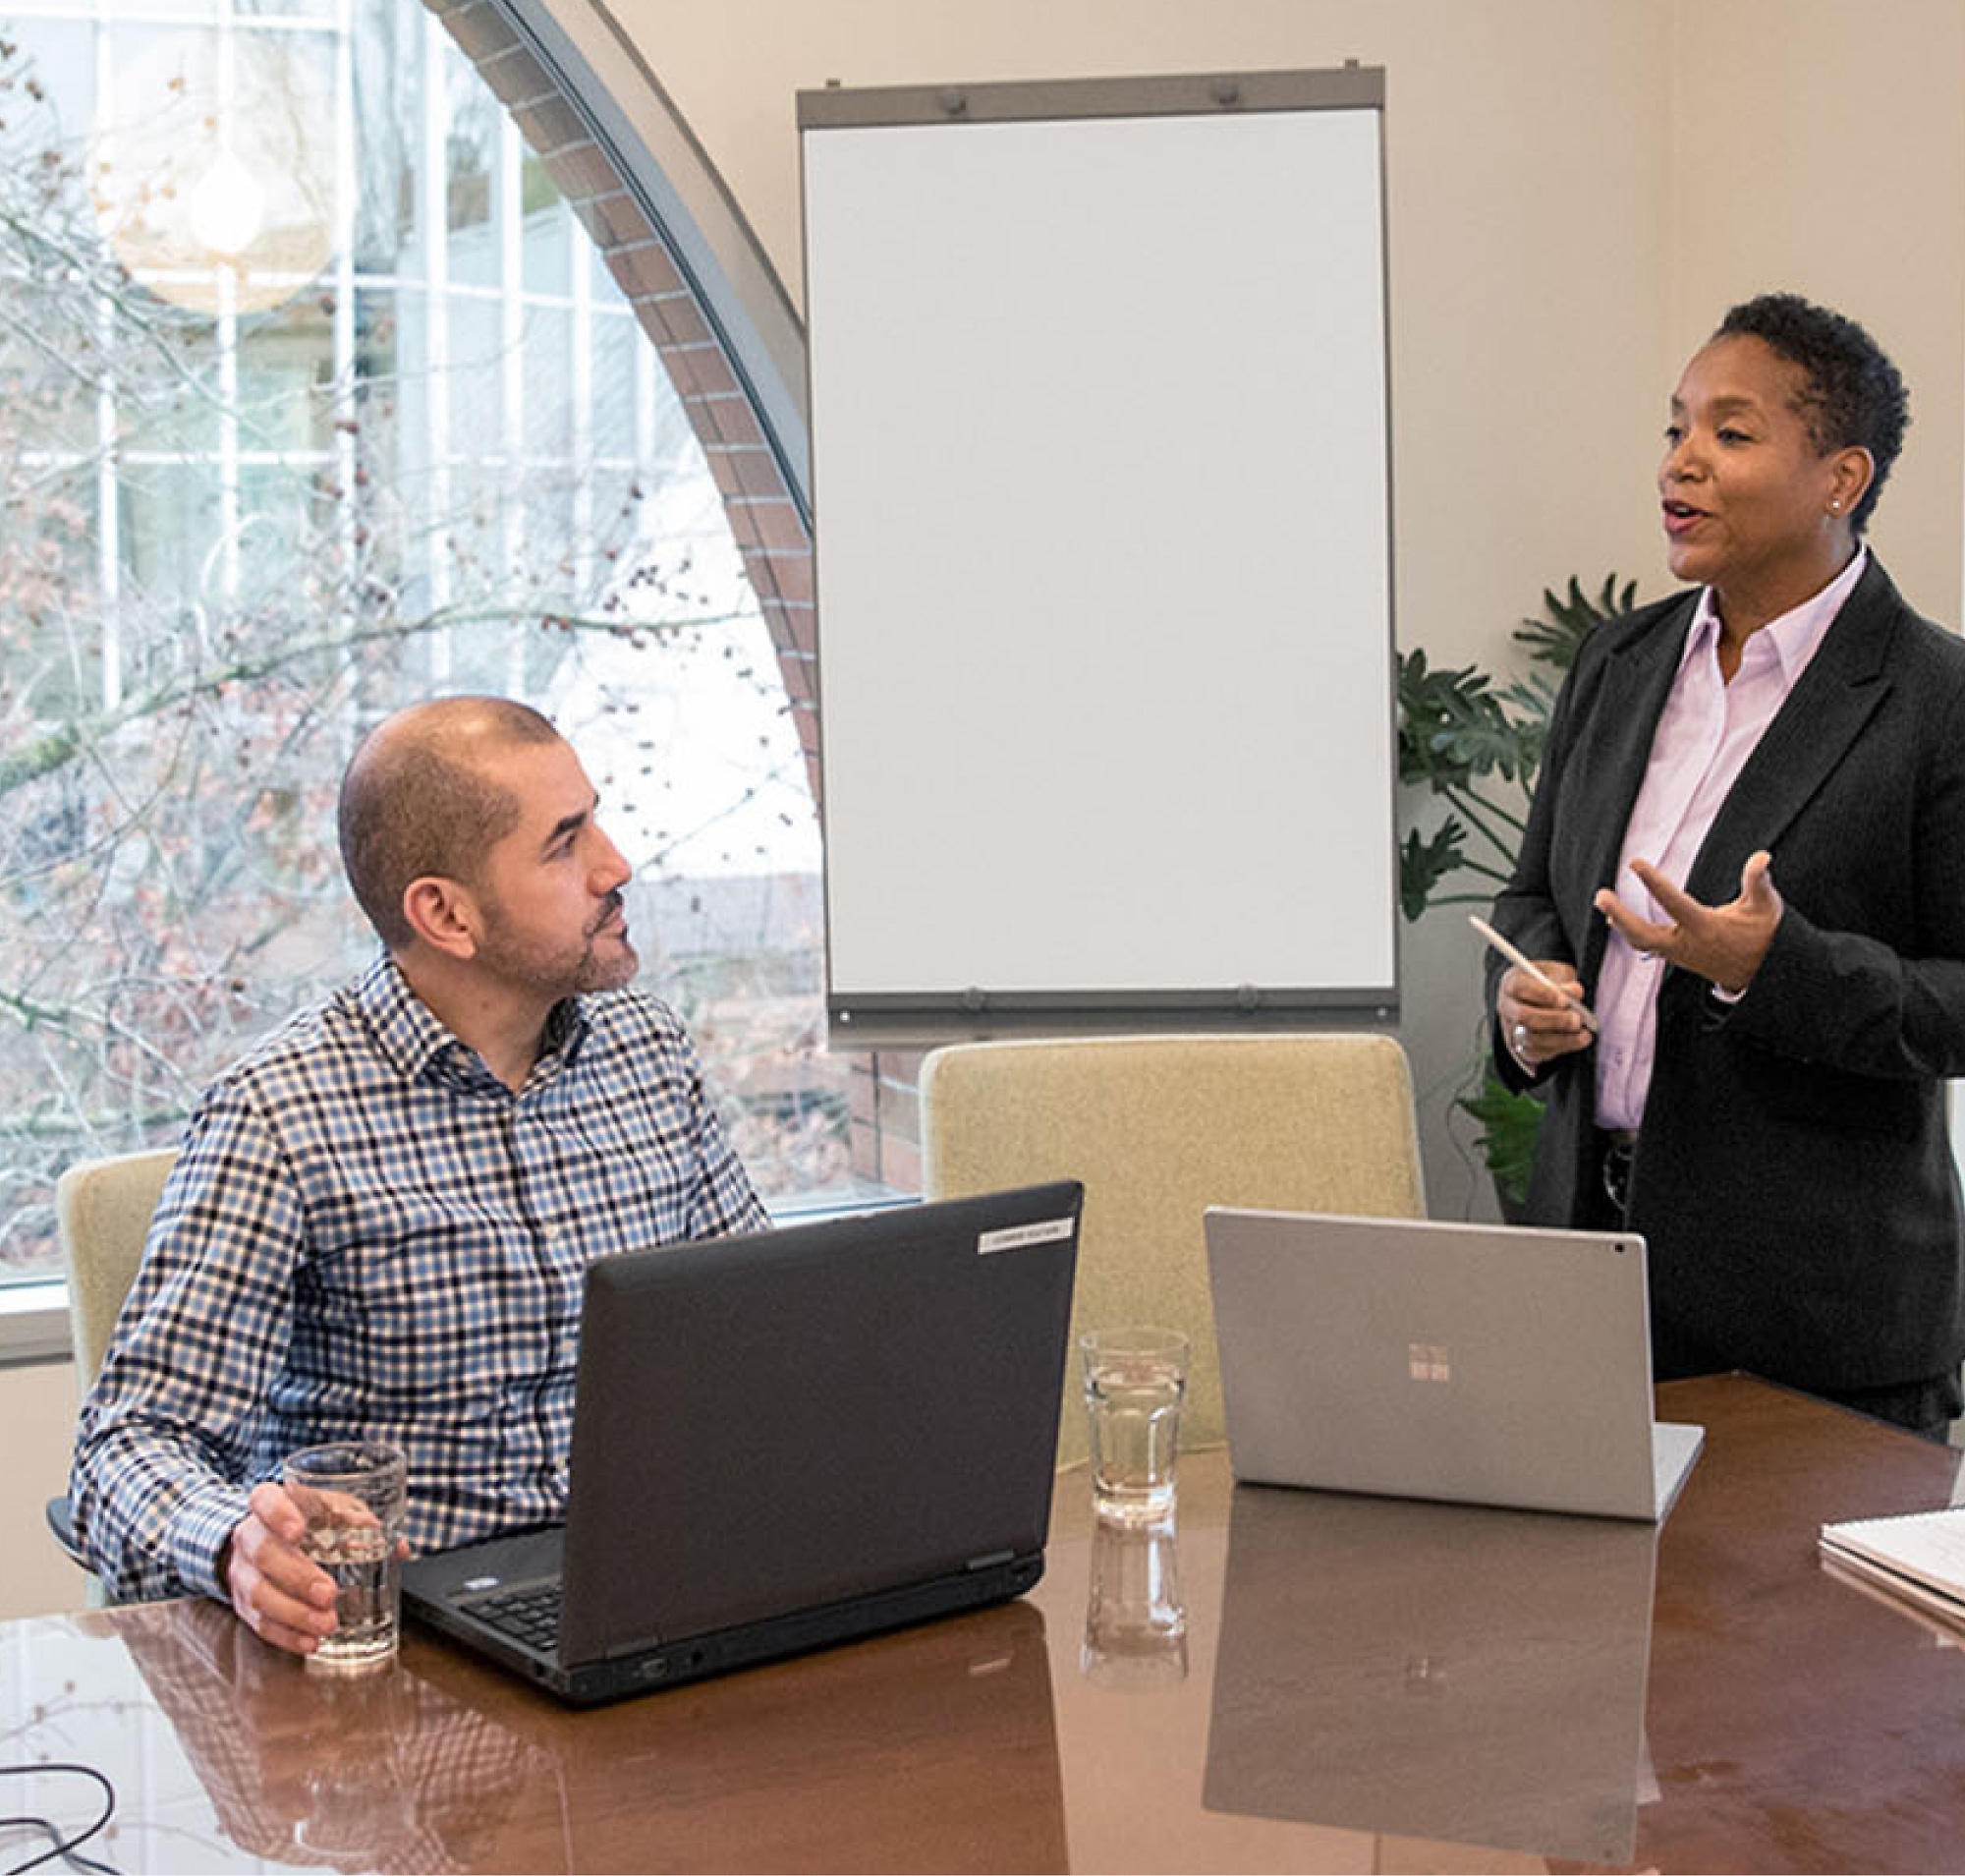 Двоє фахівців у конференц-залі; один стоячи веде презентацію, інший сидить за столом із ноутбуками перед дошкою.